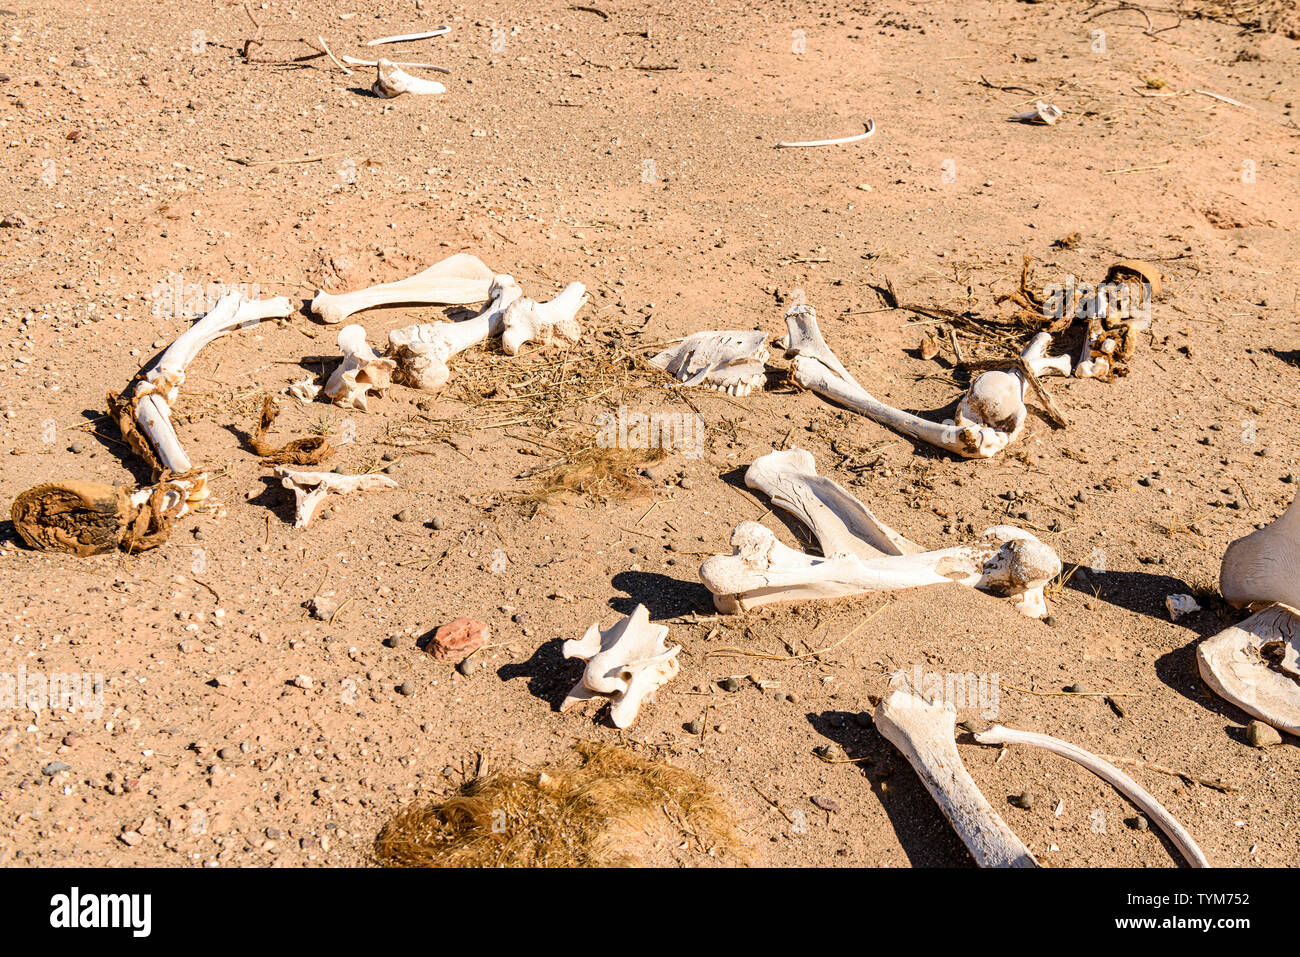 Les os d'un cheval sur le bord de la route en Namibie. Quand les chevaux arrivent en fin de vie, ils sont libérés à la recherche de nourriture pour eux-mêmes et mourir en th Banque D'Images